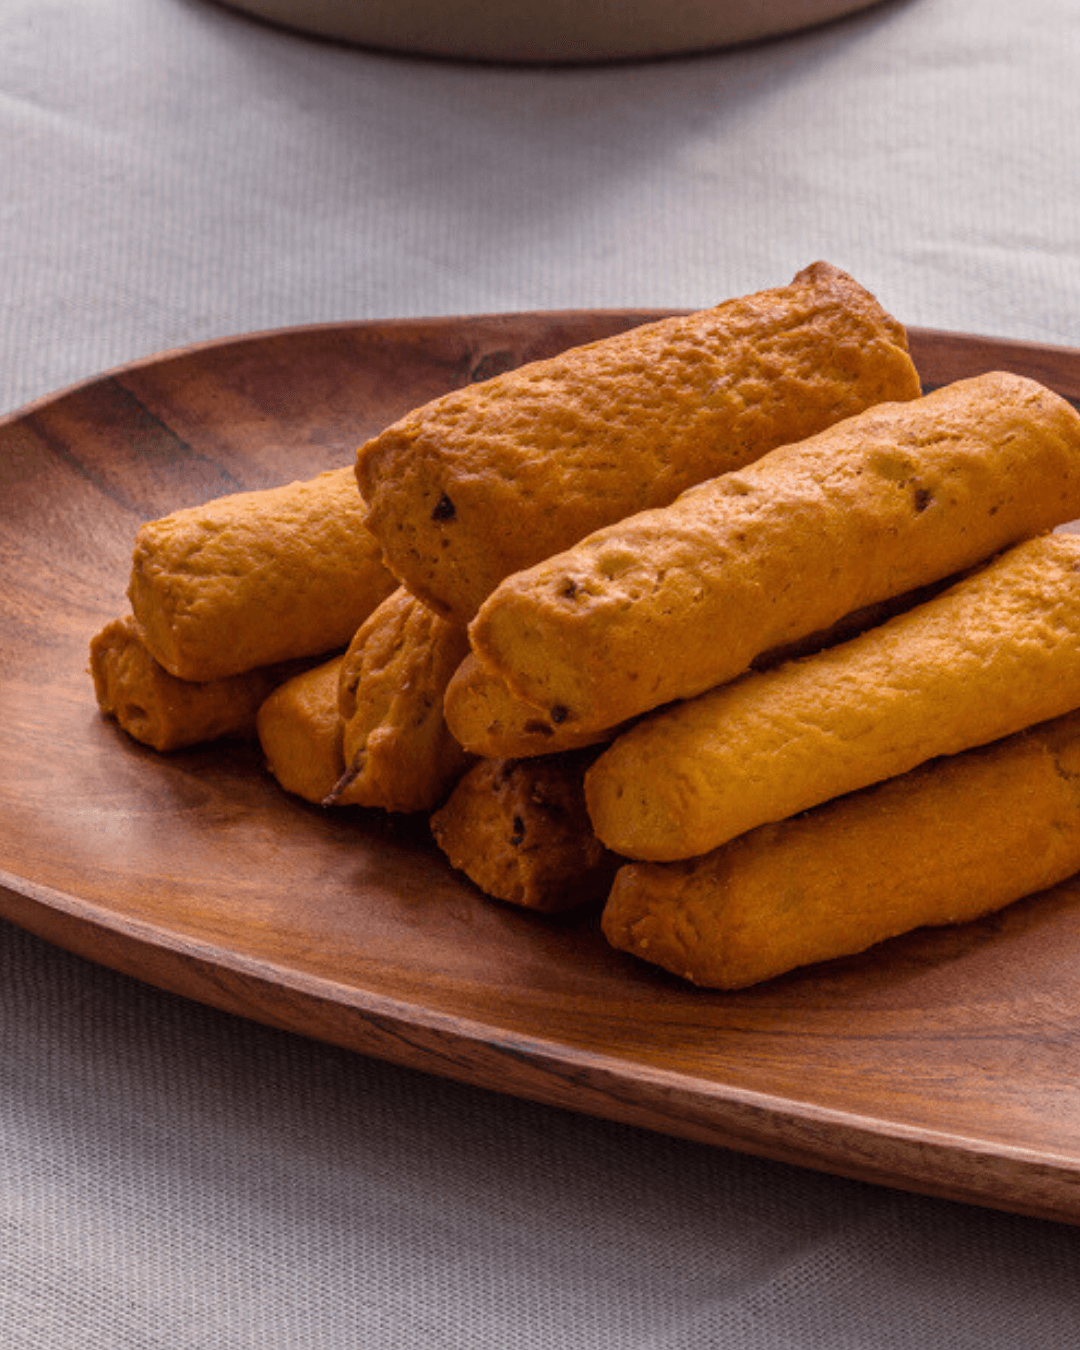 Carrot Breadsticks from Crete, 120g